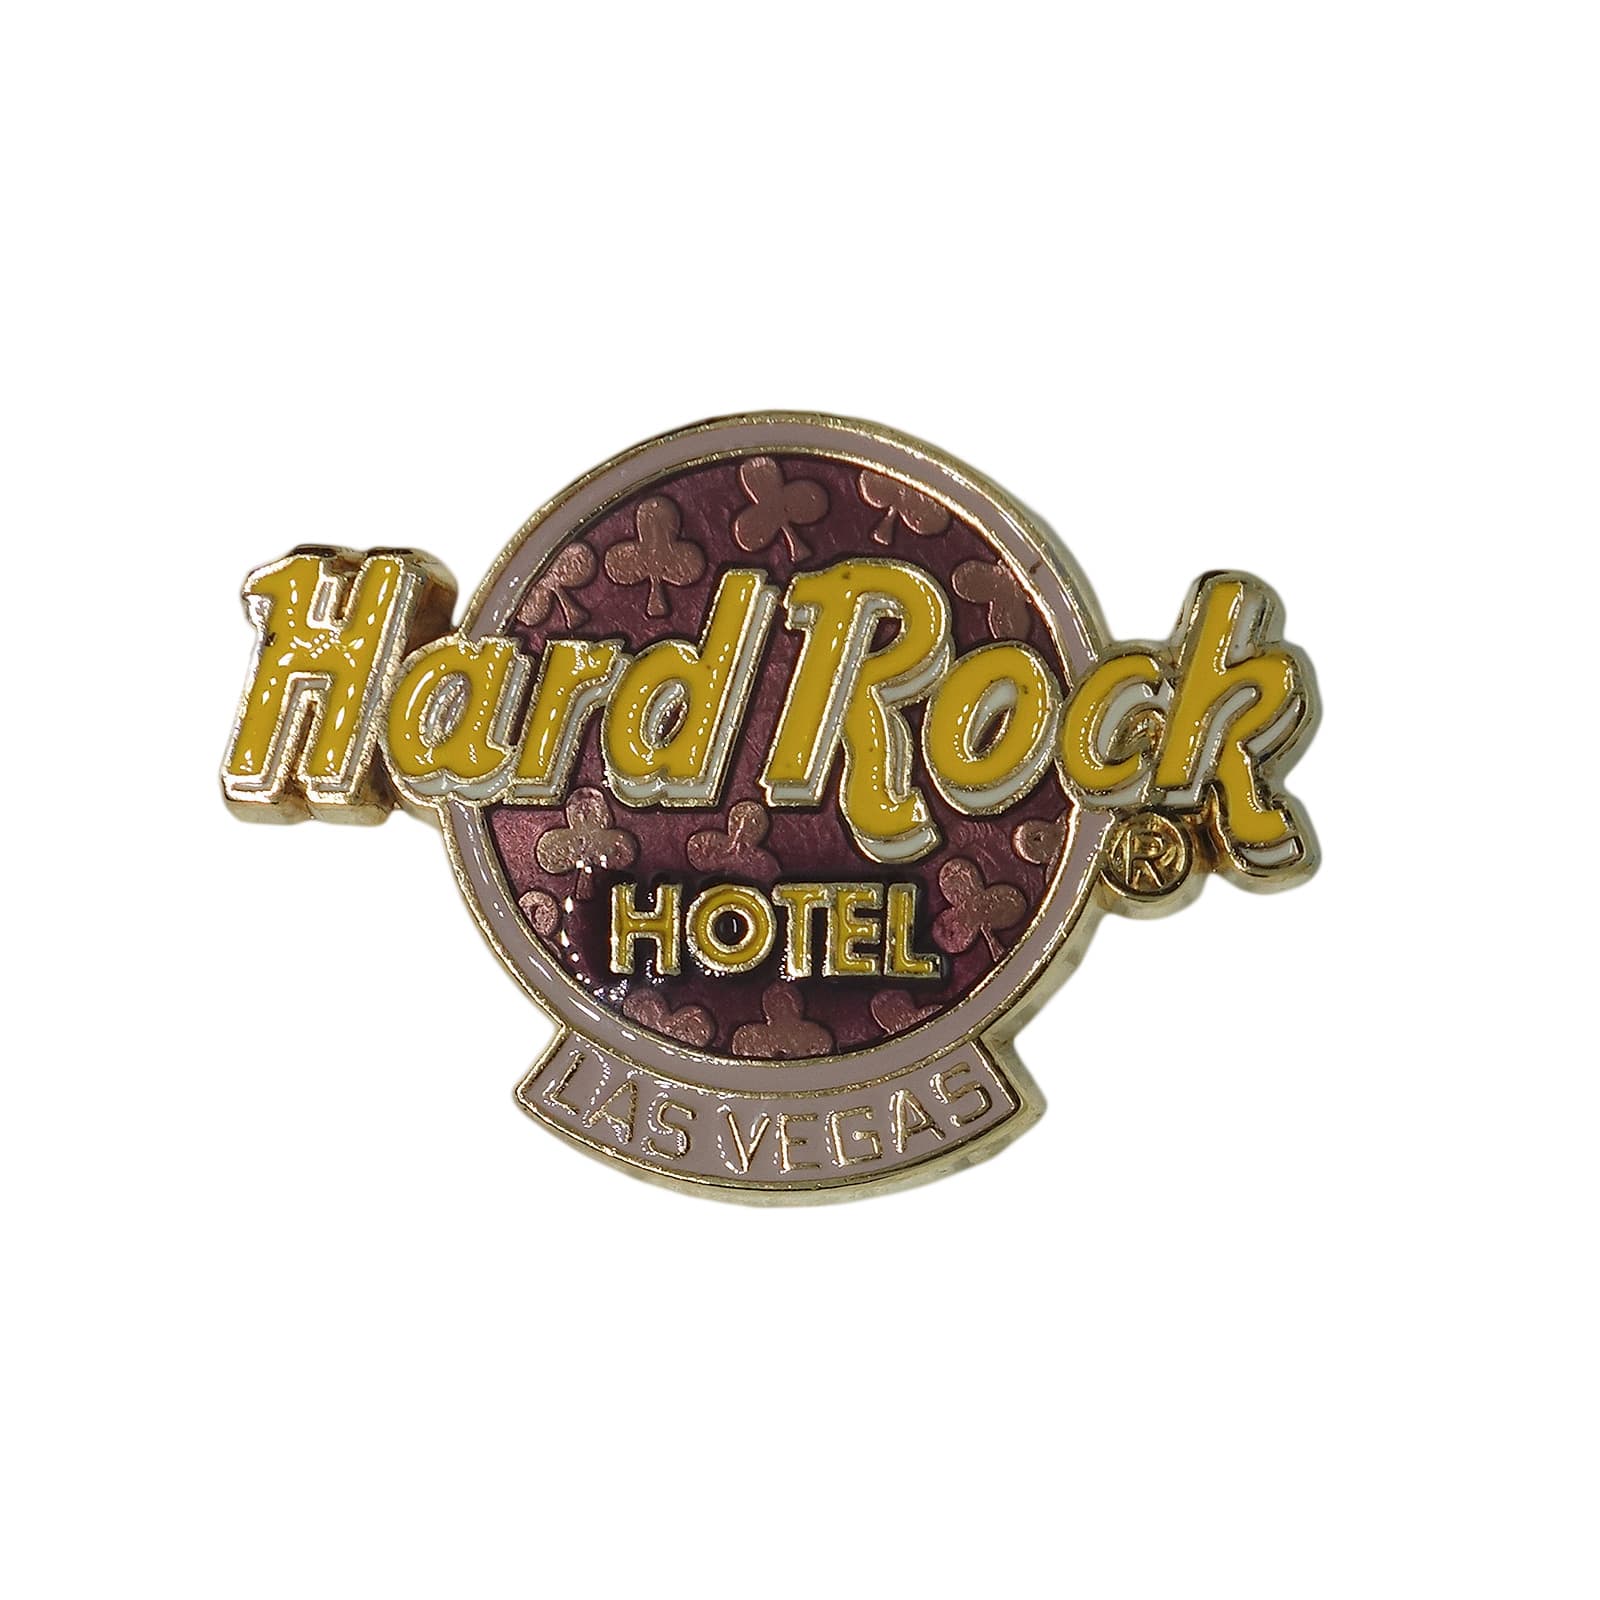 Hard Rock HOTEL トランプ クラブ ピンズ ハードロックホテル LAS VEGAS